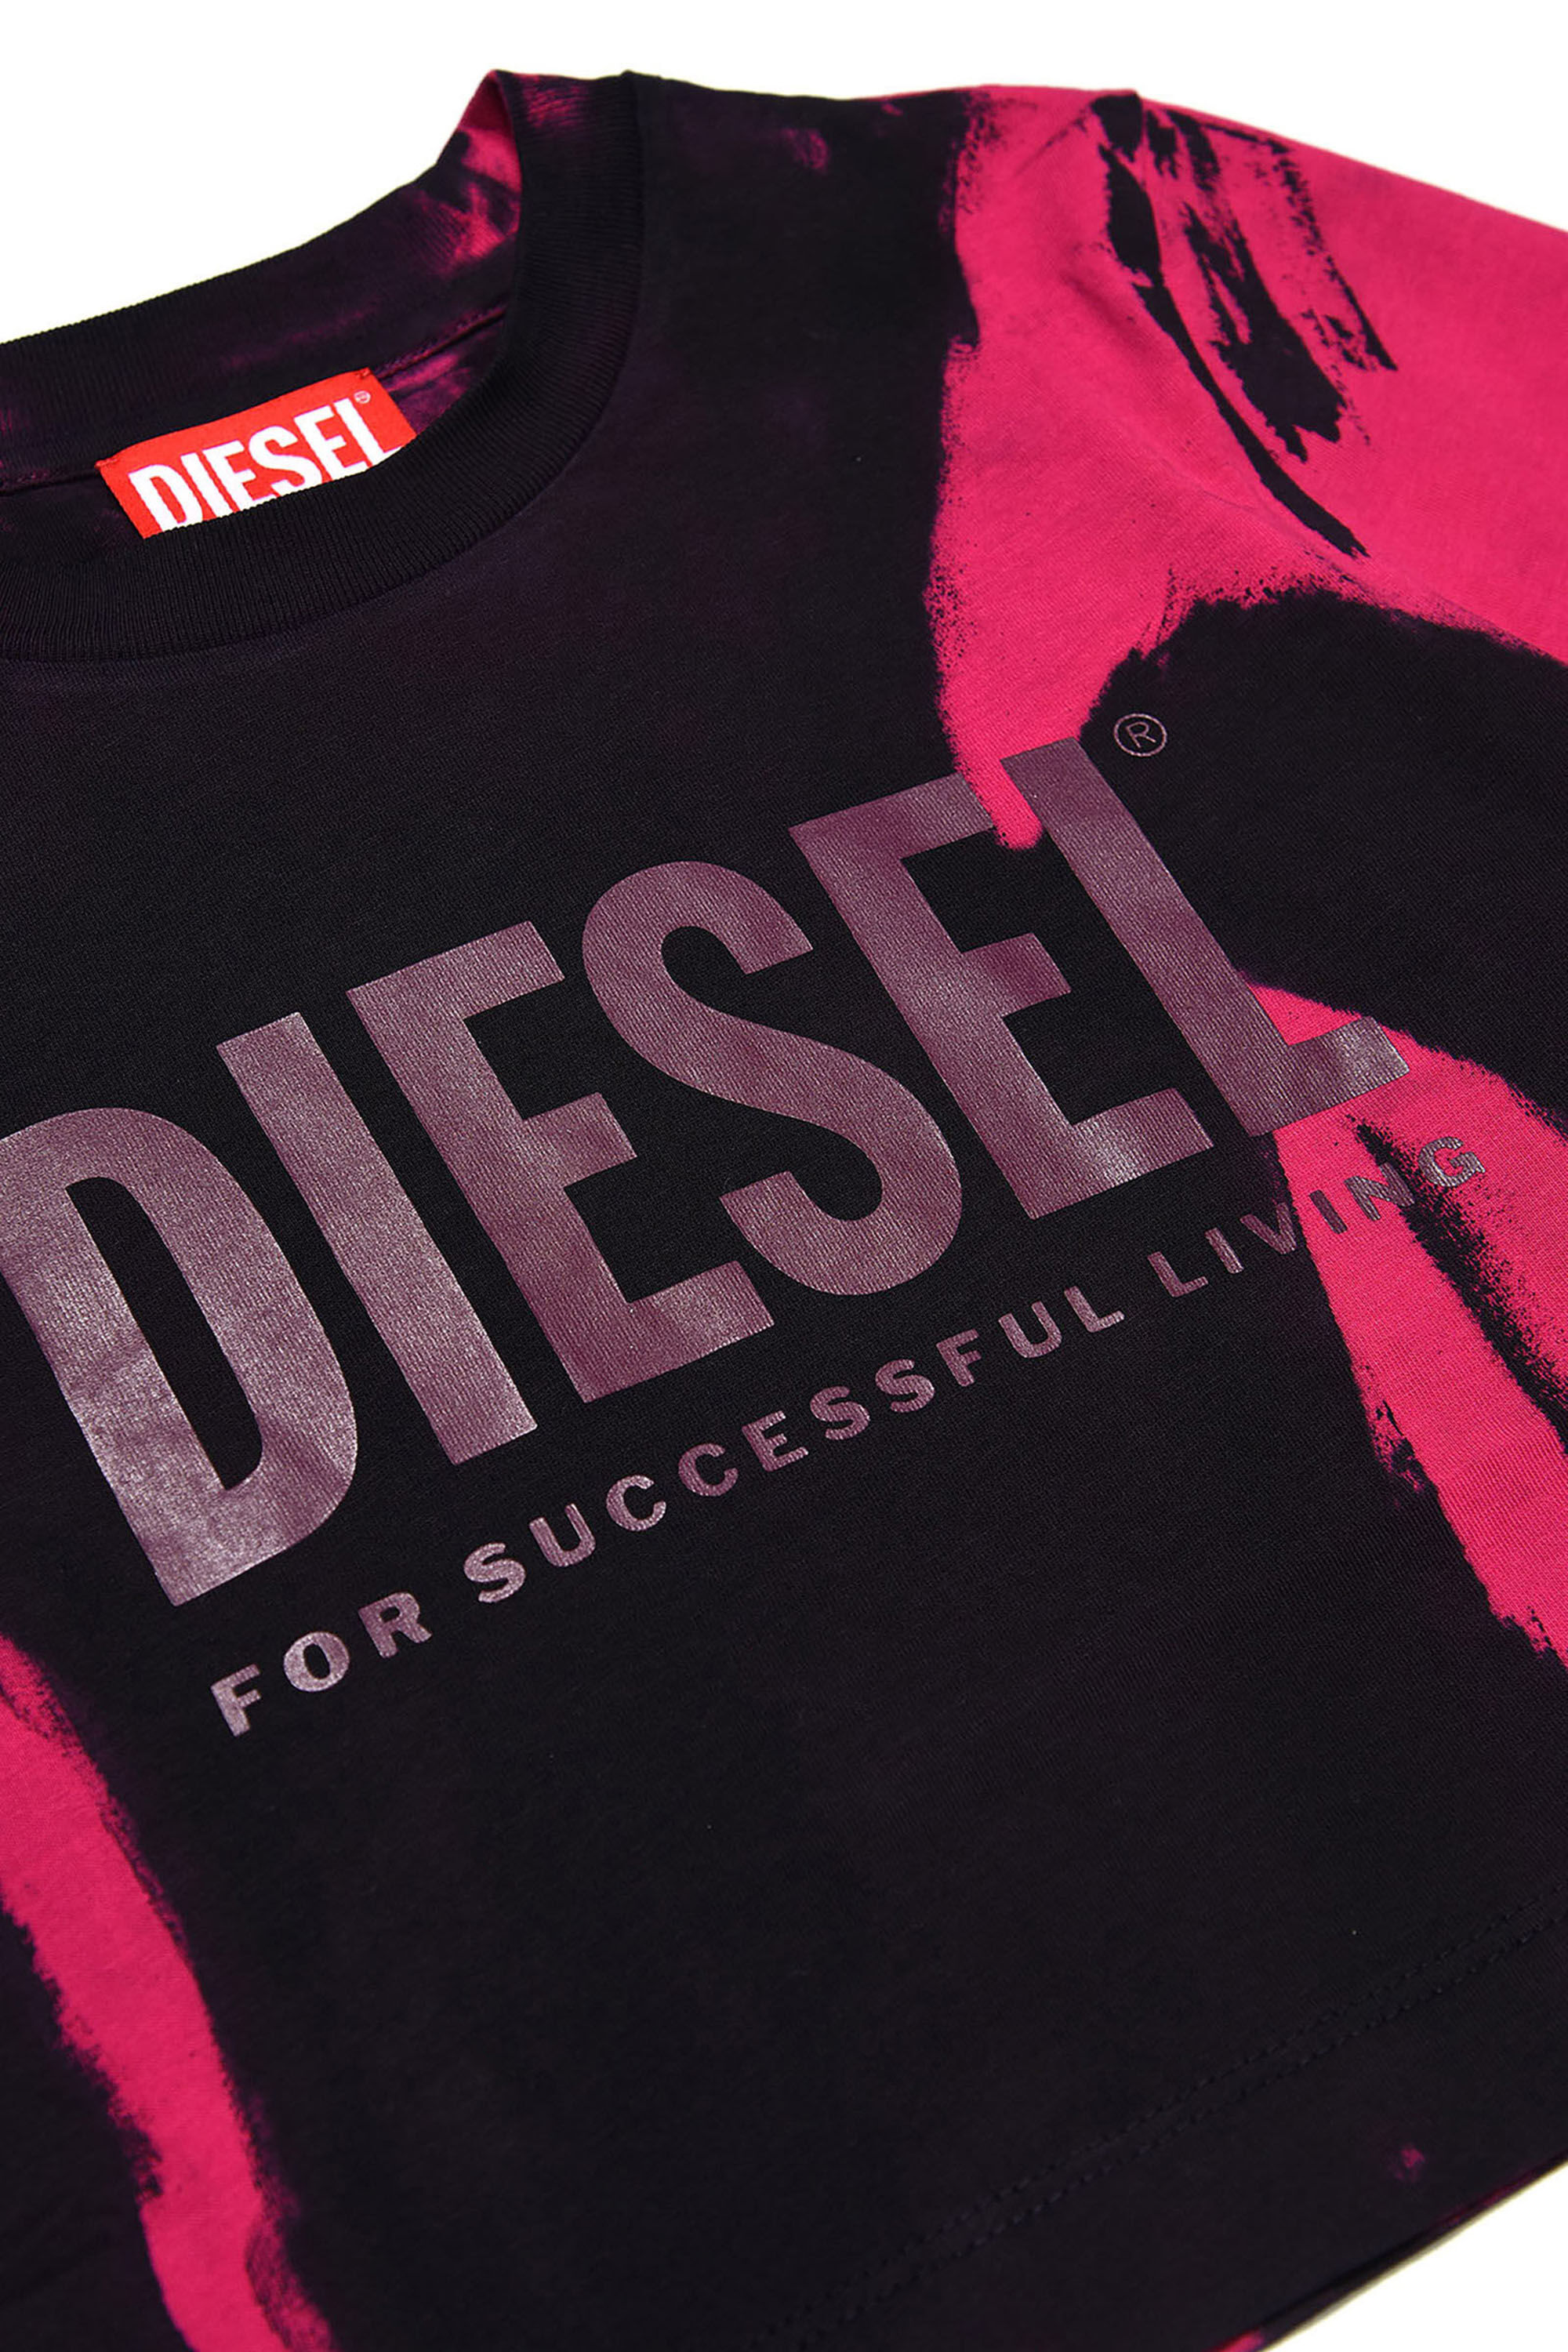 Diesel - TRECROWT&D, Nero/Rosa - Image 3